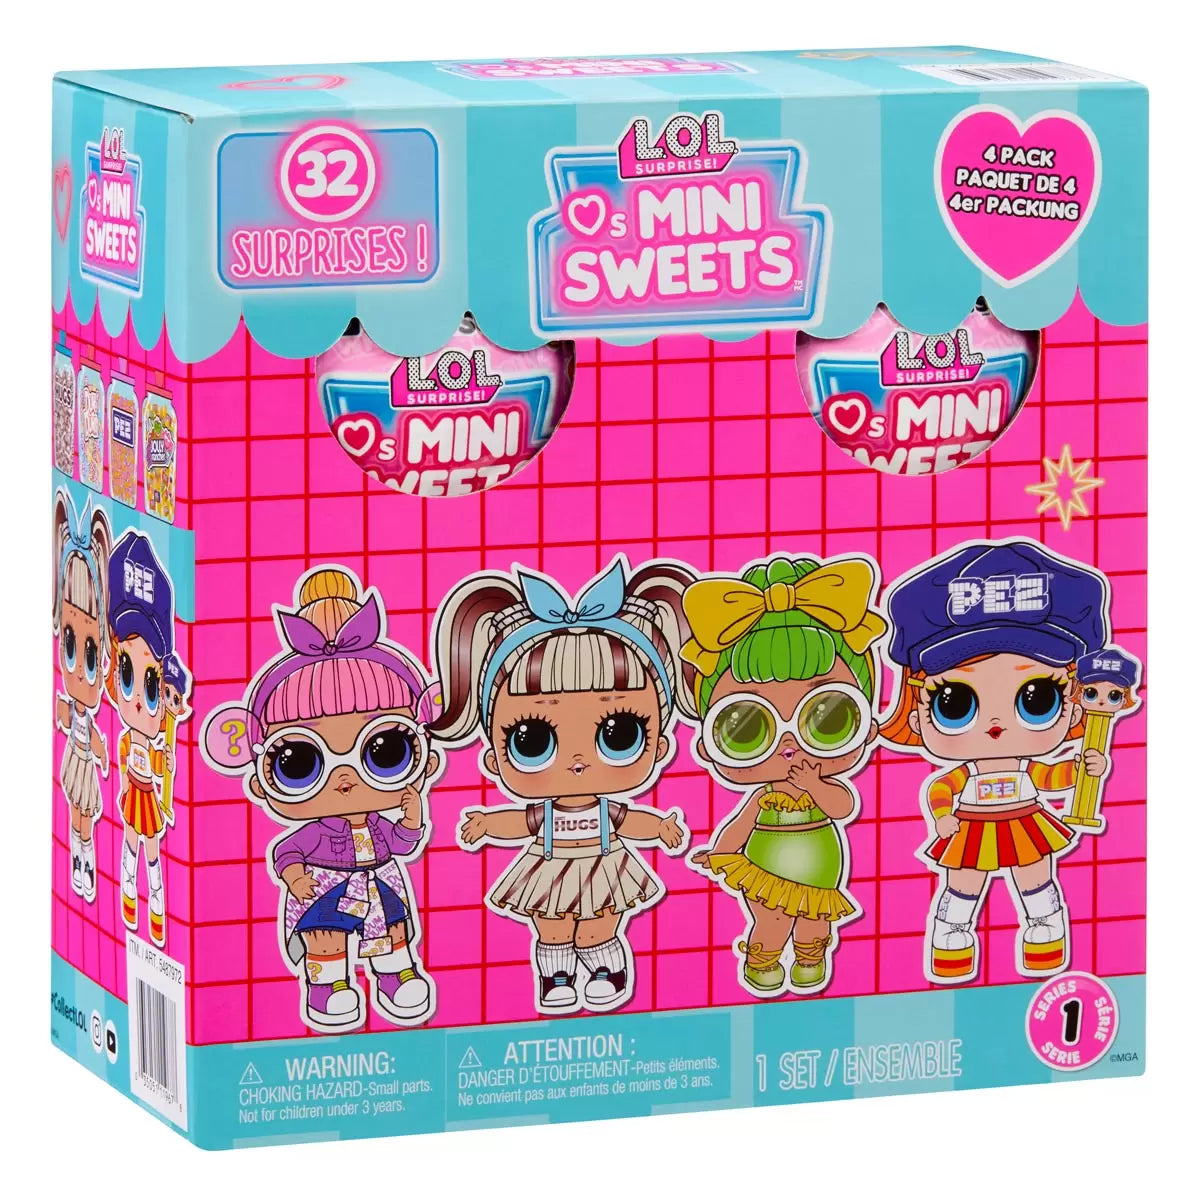 L.O.L Surprise! Loves Mini Sweets Dum Dums 4 Pack Assortment